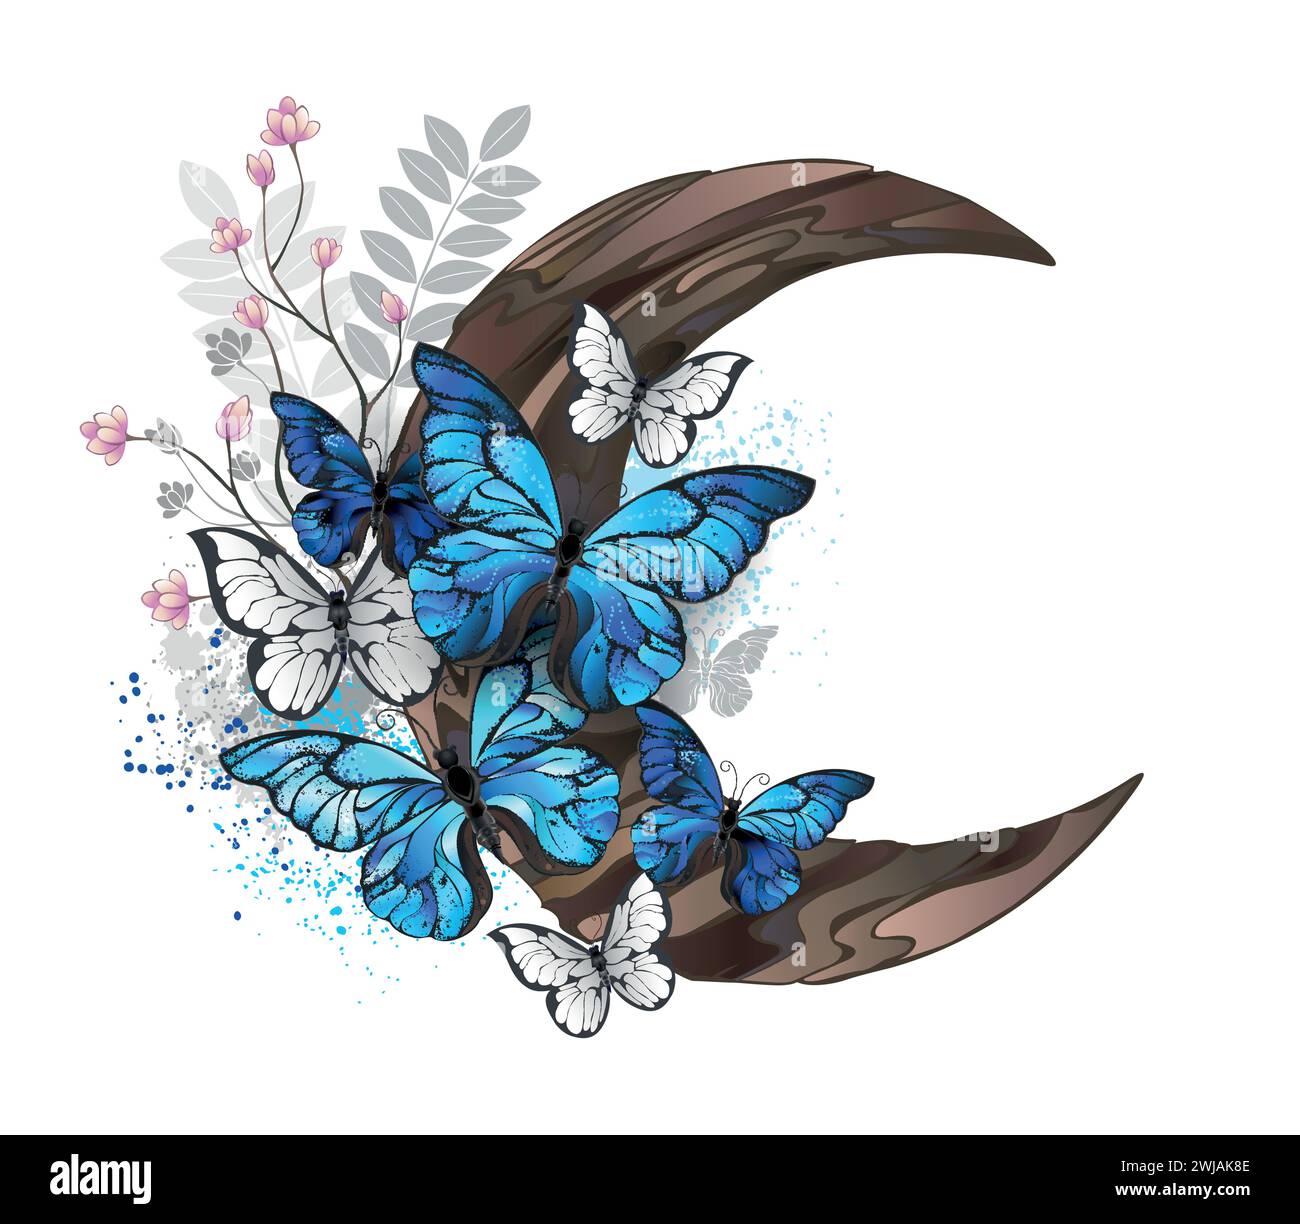 Le farfalle blu morfo con ali dettagliate si trovano su una mezzaluna di legno decorata con piante selvatiche su sfondo bianco. Morfo delle farfalle blu. Illustrazione Vettoriale